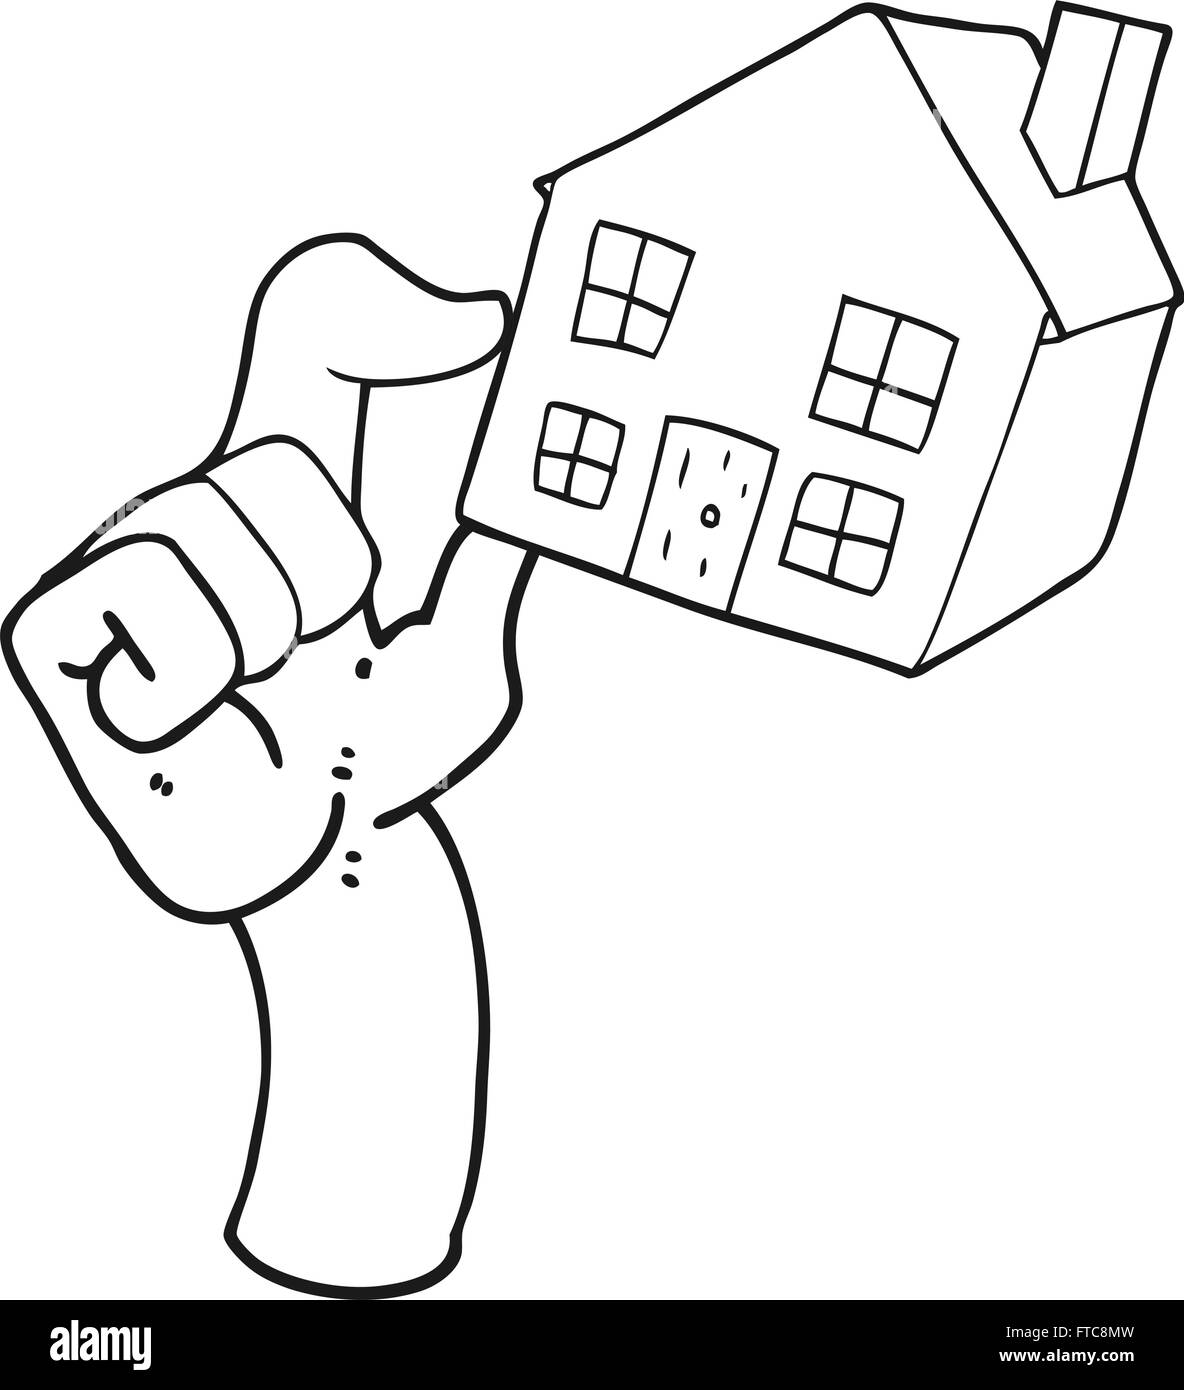 Noir et blanc dessiné à main levée sur le marché de l'habitation de dessin animé Illustration de Vecteur